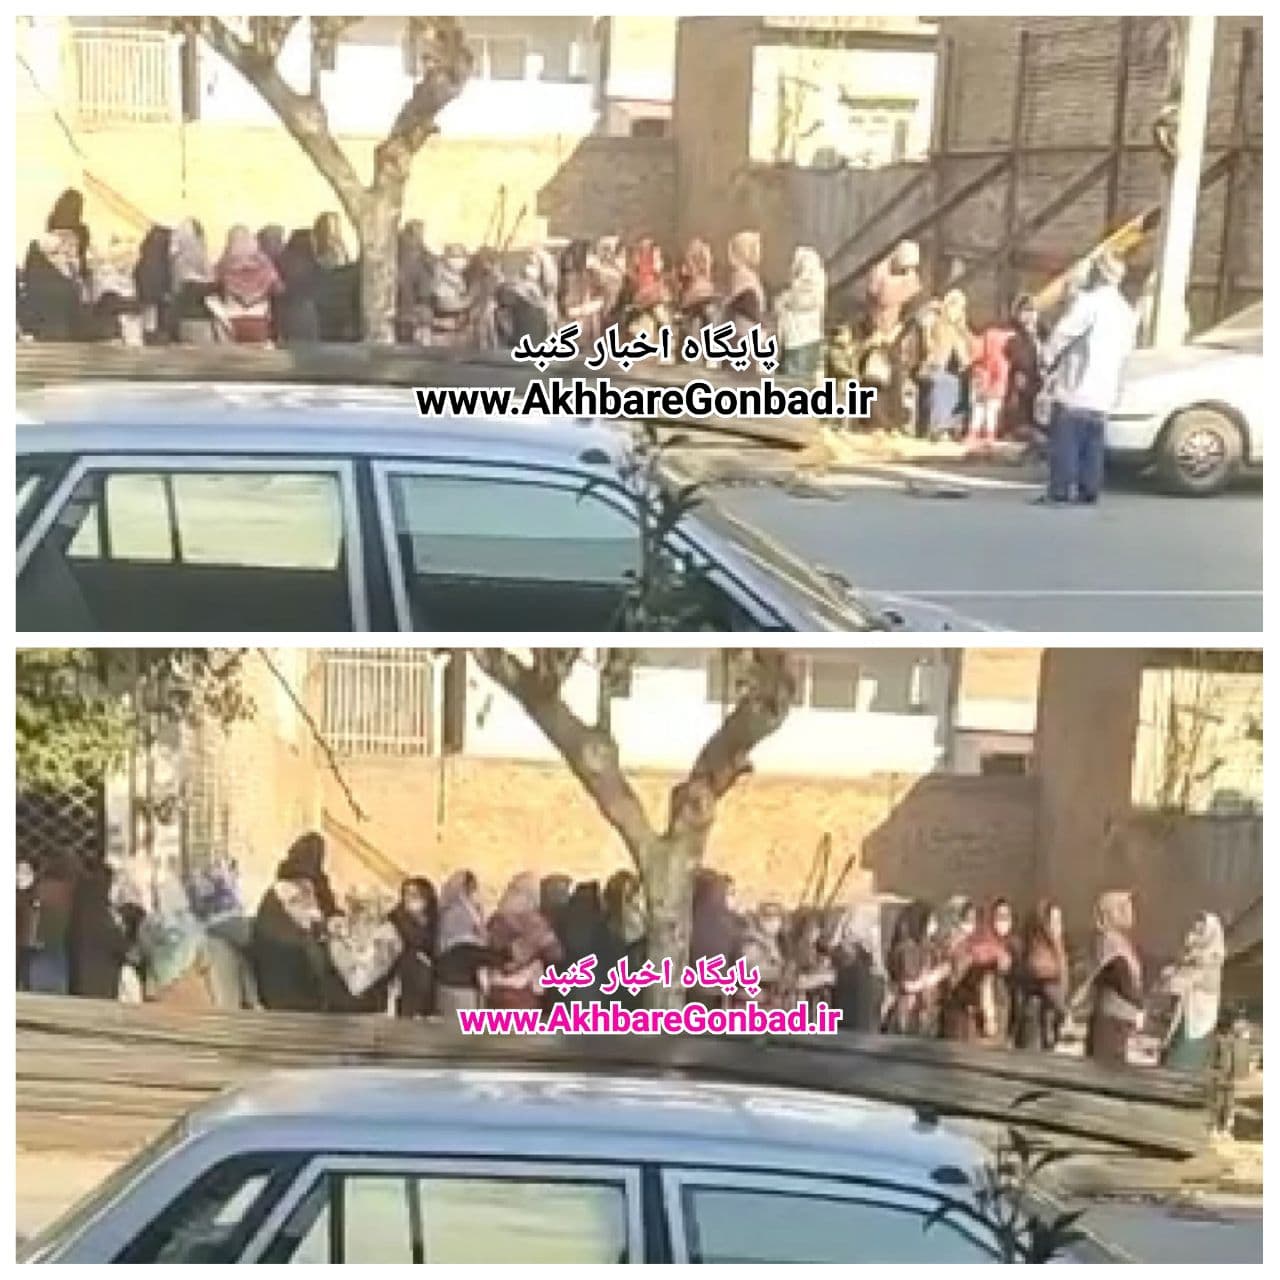 تجمع و صف خرید روغن در خیابان وشمگیر (شهید مفتح) گنبدکاووس